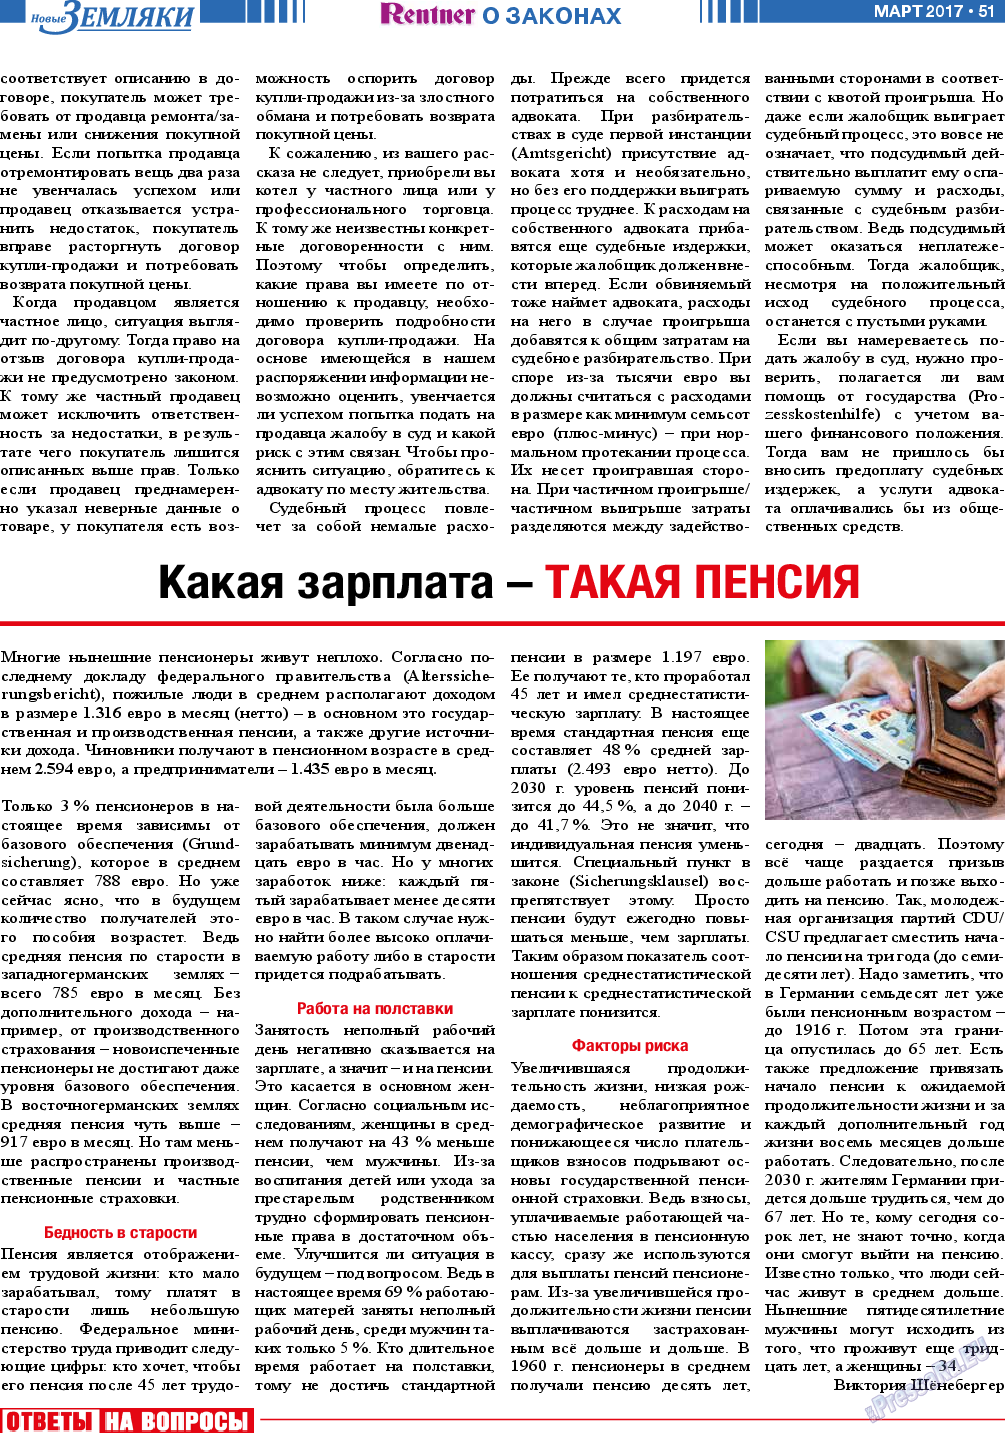 Новые Земляки (газета). 2017 год, номер 3, стр. 51